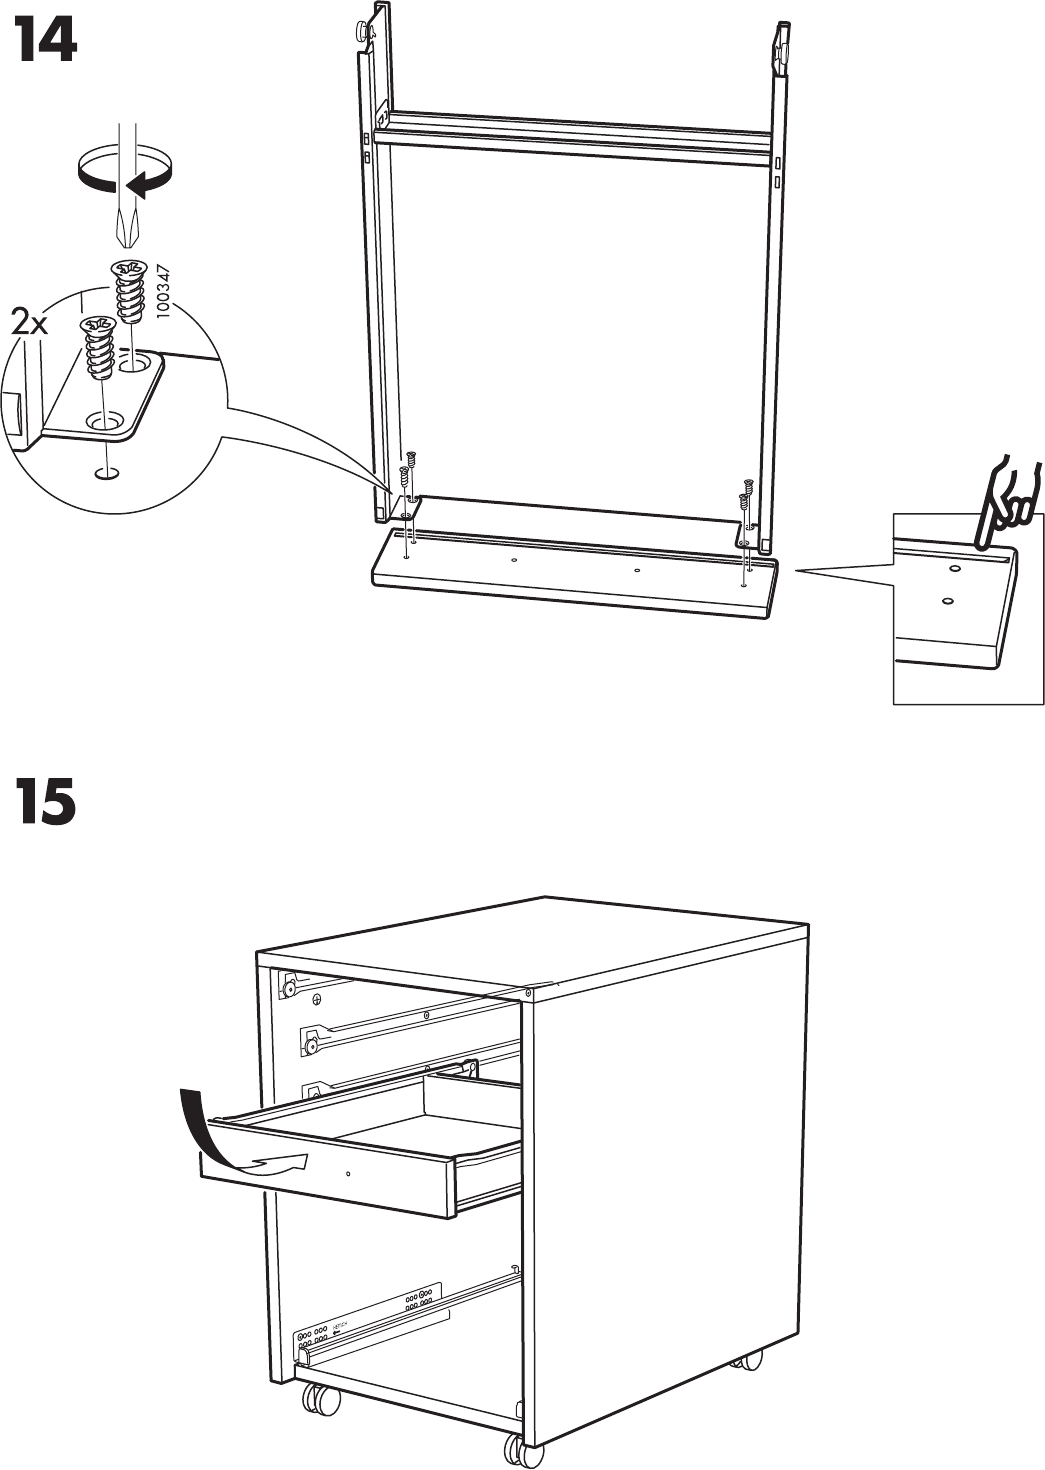 Ikea galant стол инструкция по сборке